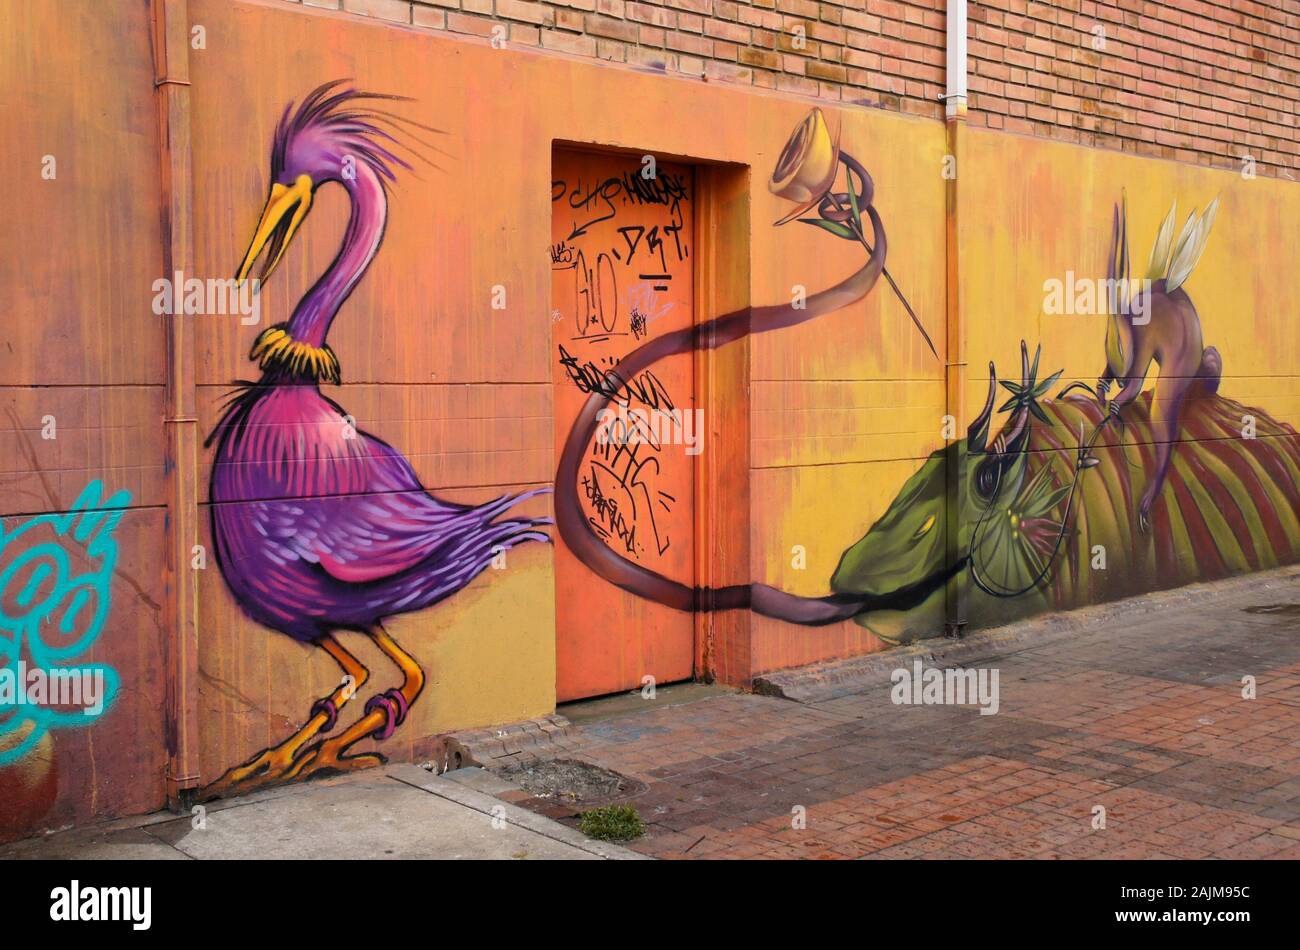 Murale colorée et fantaisiste peint par artiste de rue, Wosnan sur mur dans la Concordia, Bogota, Colombie ; projet mondes imaginaires Banque D'Images